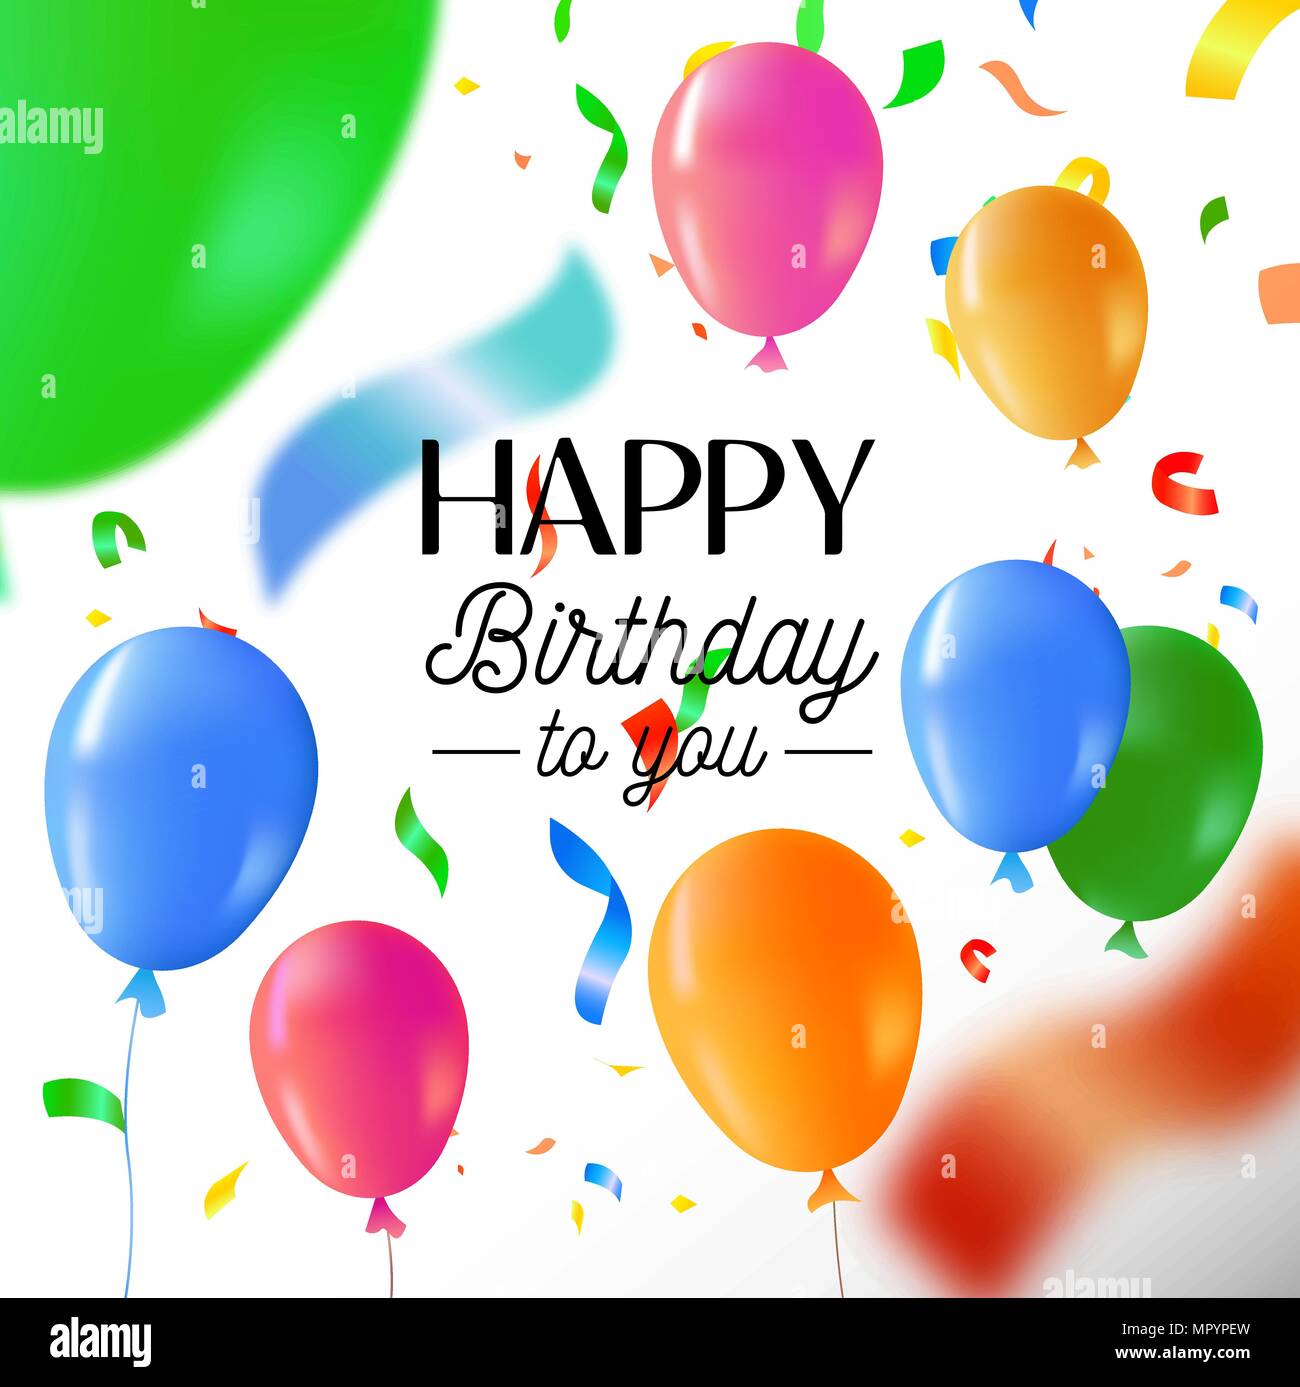 Herzlichen Glückwunsch zum Geburtstag Grußkarte oder Party Einladung. Spaß Design mit bunten Luftballons, Konfetti Text zitieren und festliche Dekoration. EPS 10 Vektor. Stock Vektor